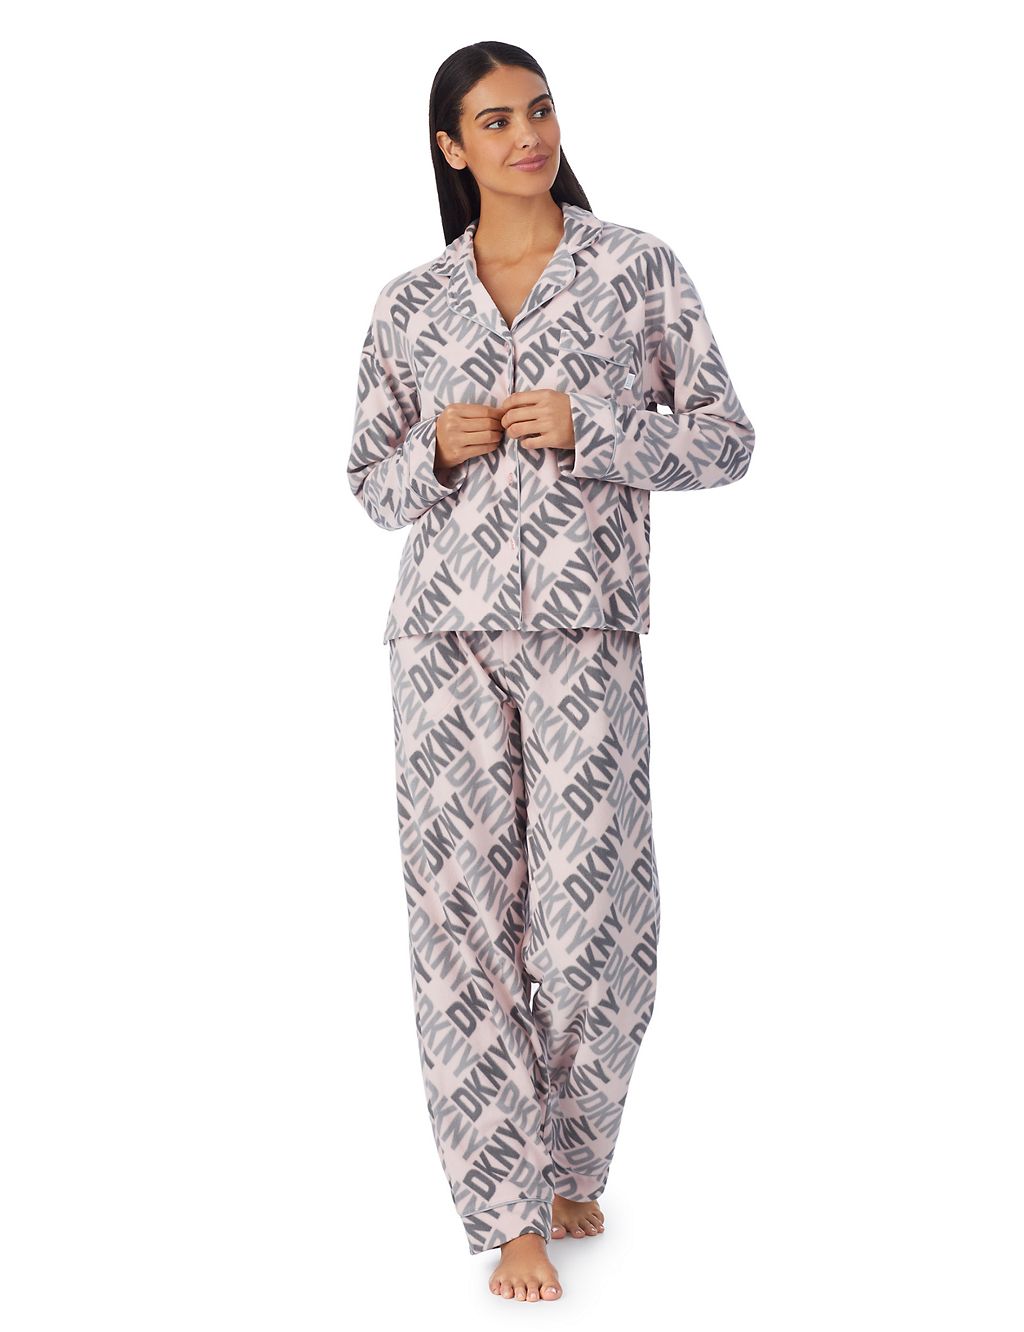 dkny pyjamas womens